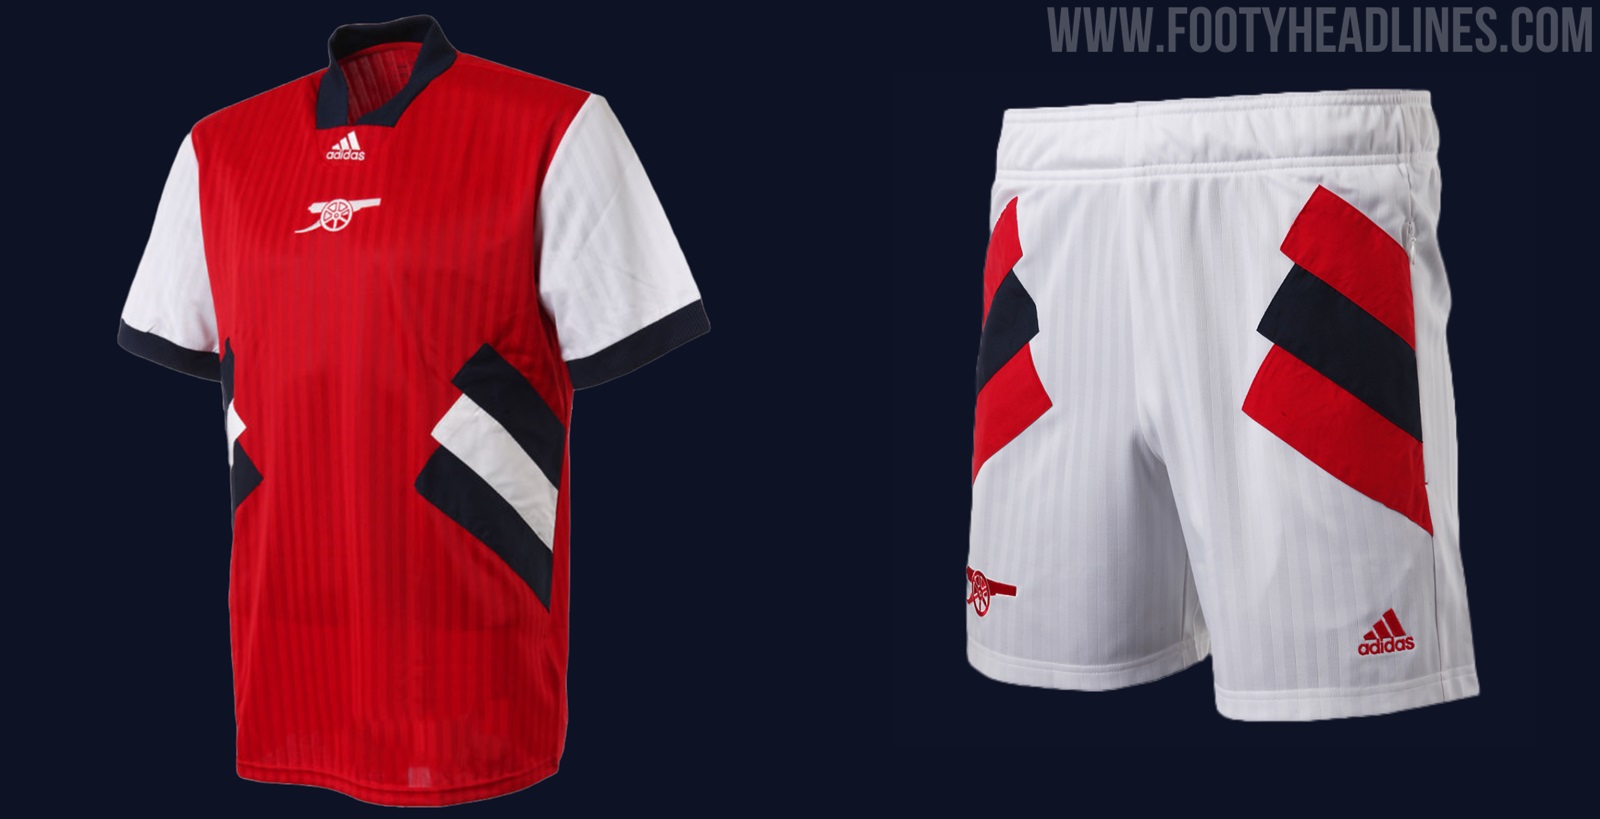 LUKE on X: The new @adidasfootball Flamengo Icon jersey is